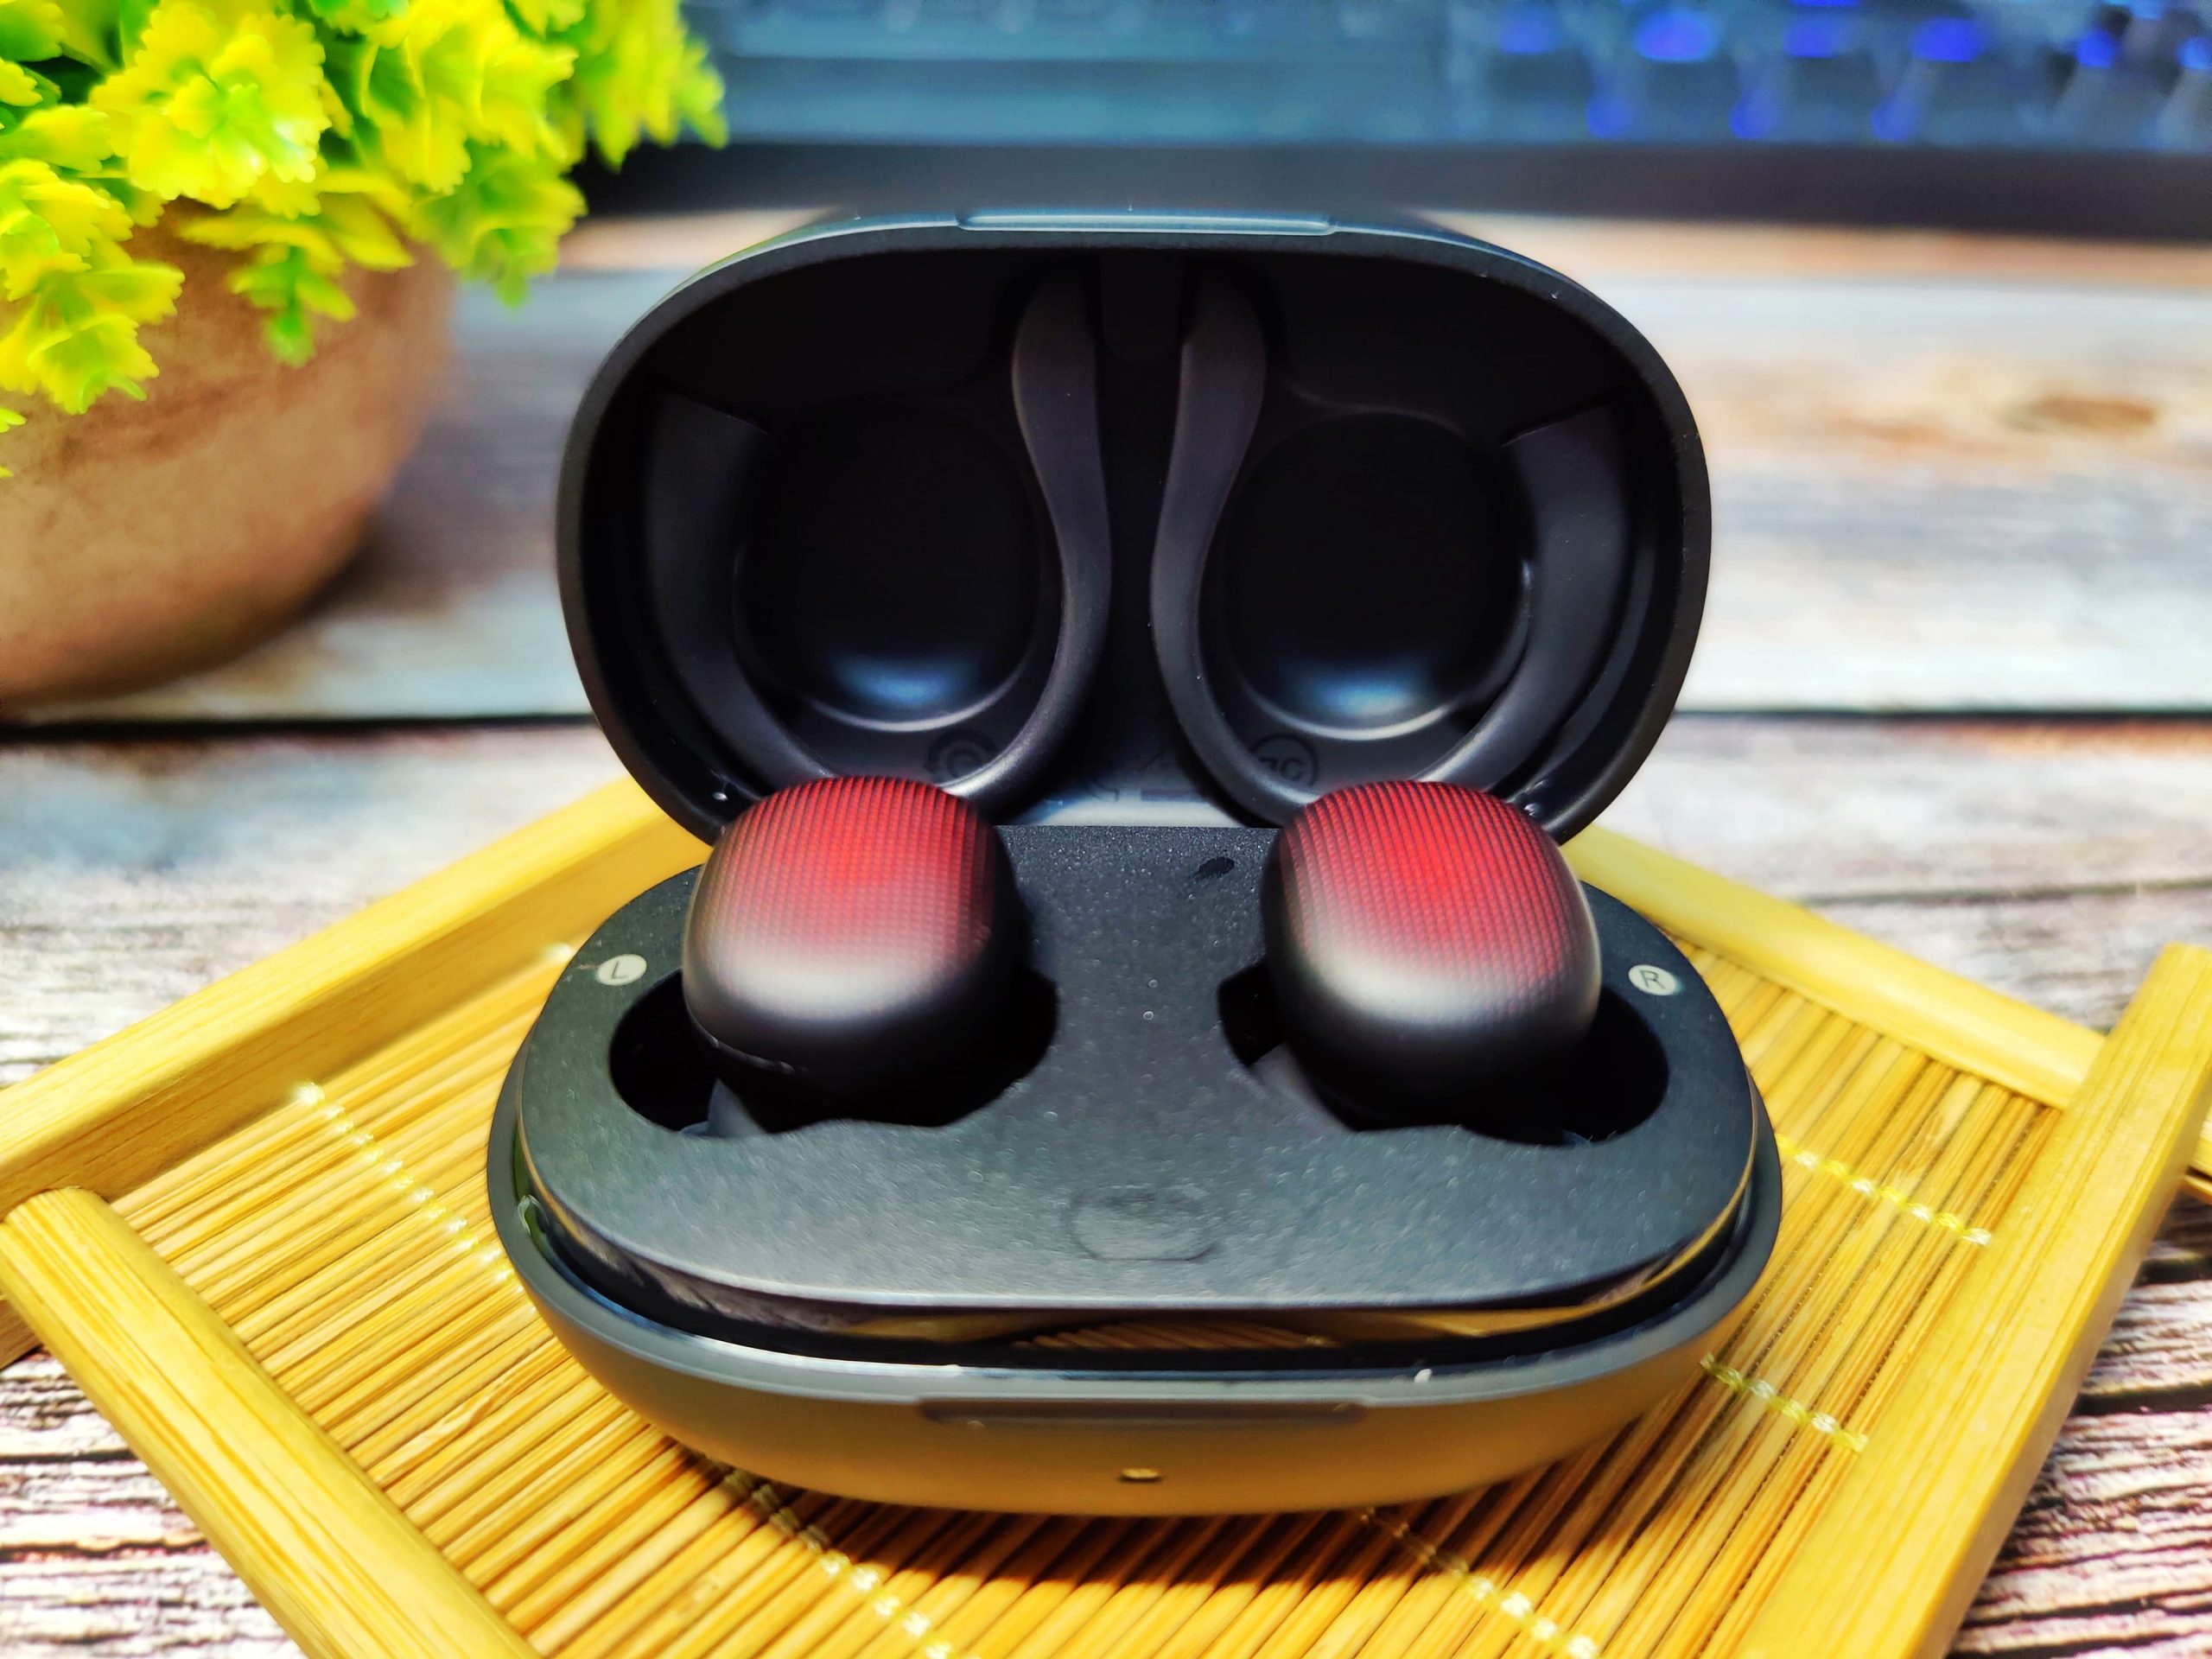 [ 藍牙耳機推薦 ] Amazfit PowerBuds 真無線藍牙耳機 – 功能眾多、音質出色